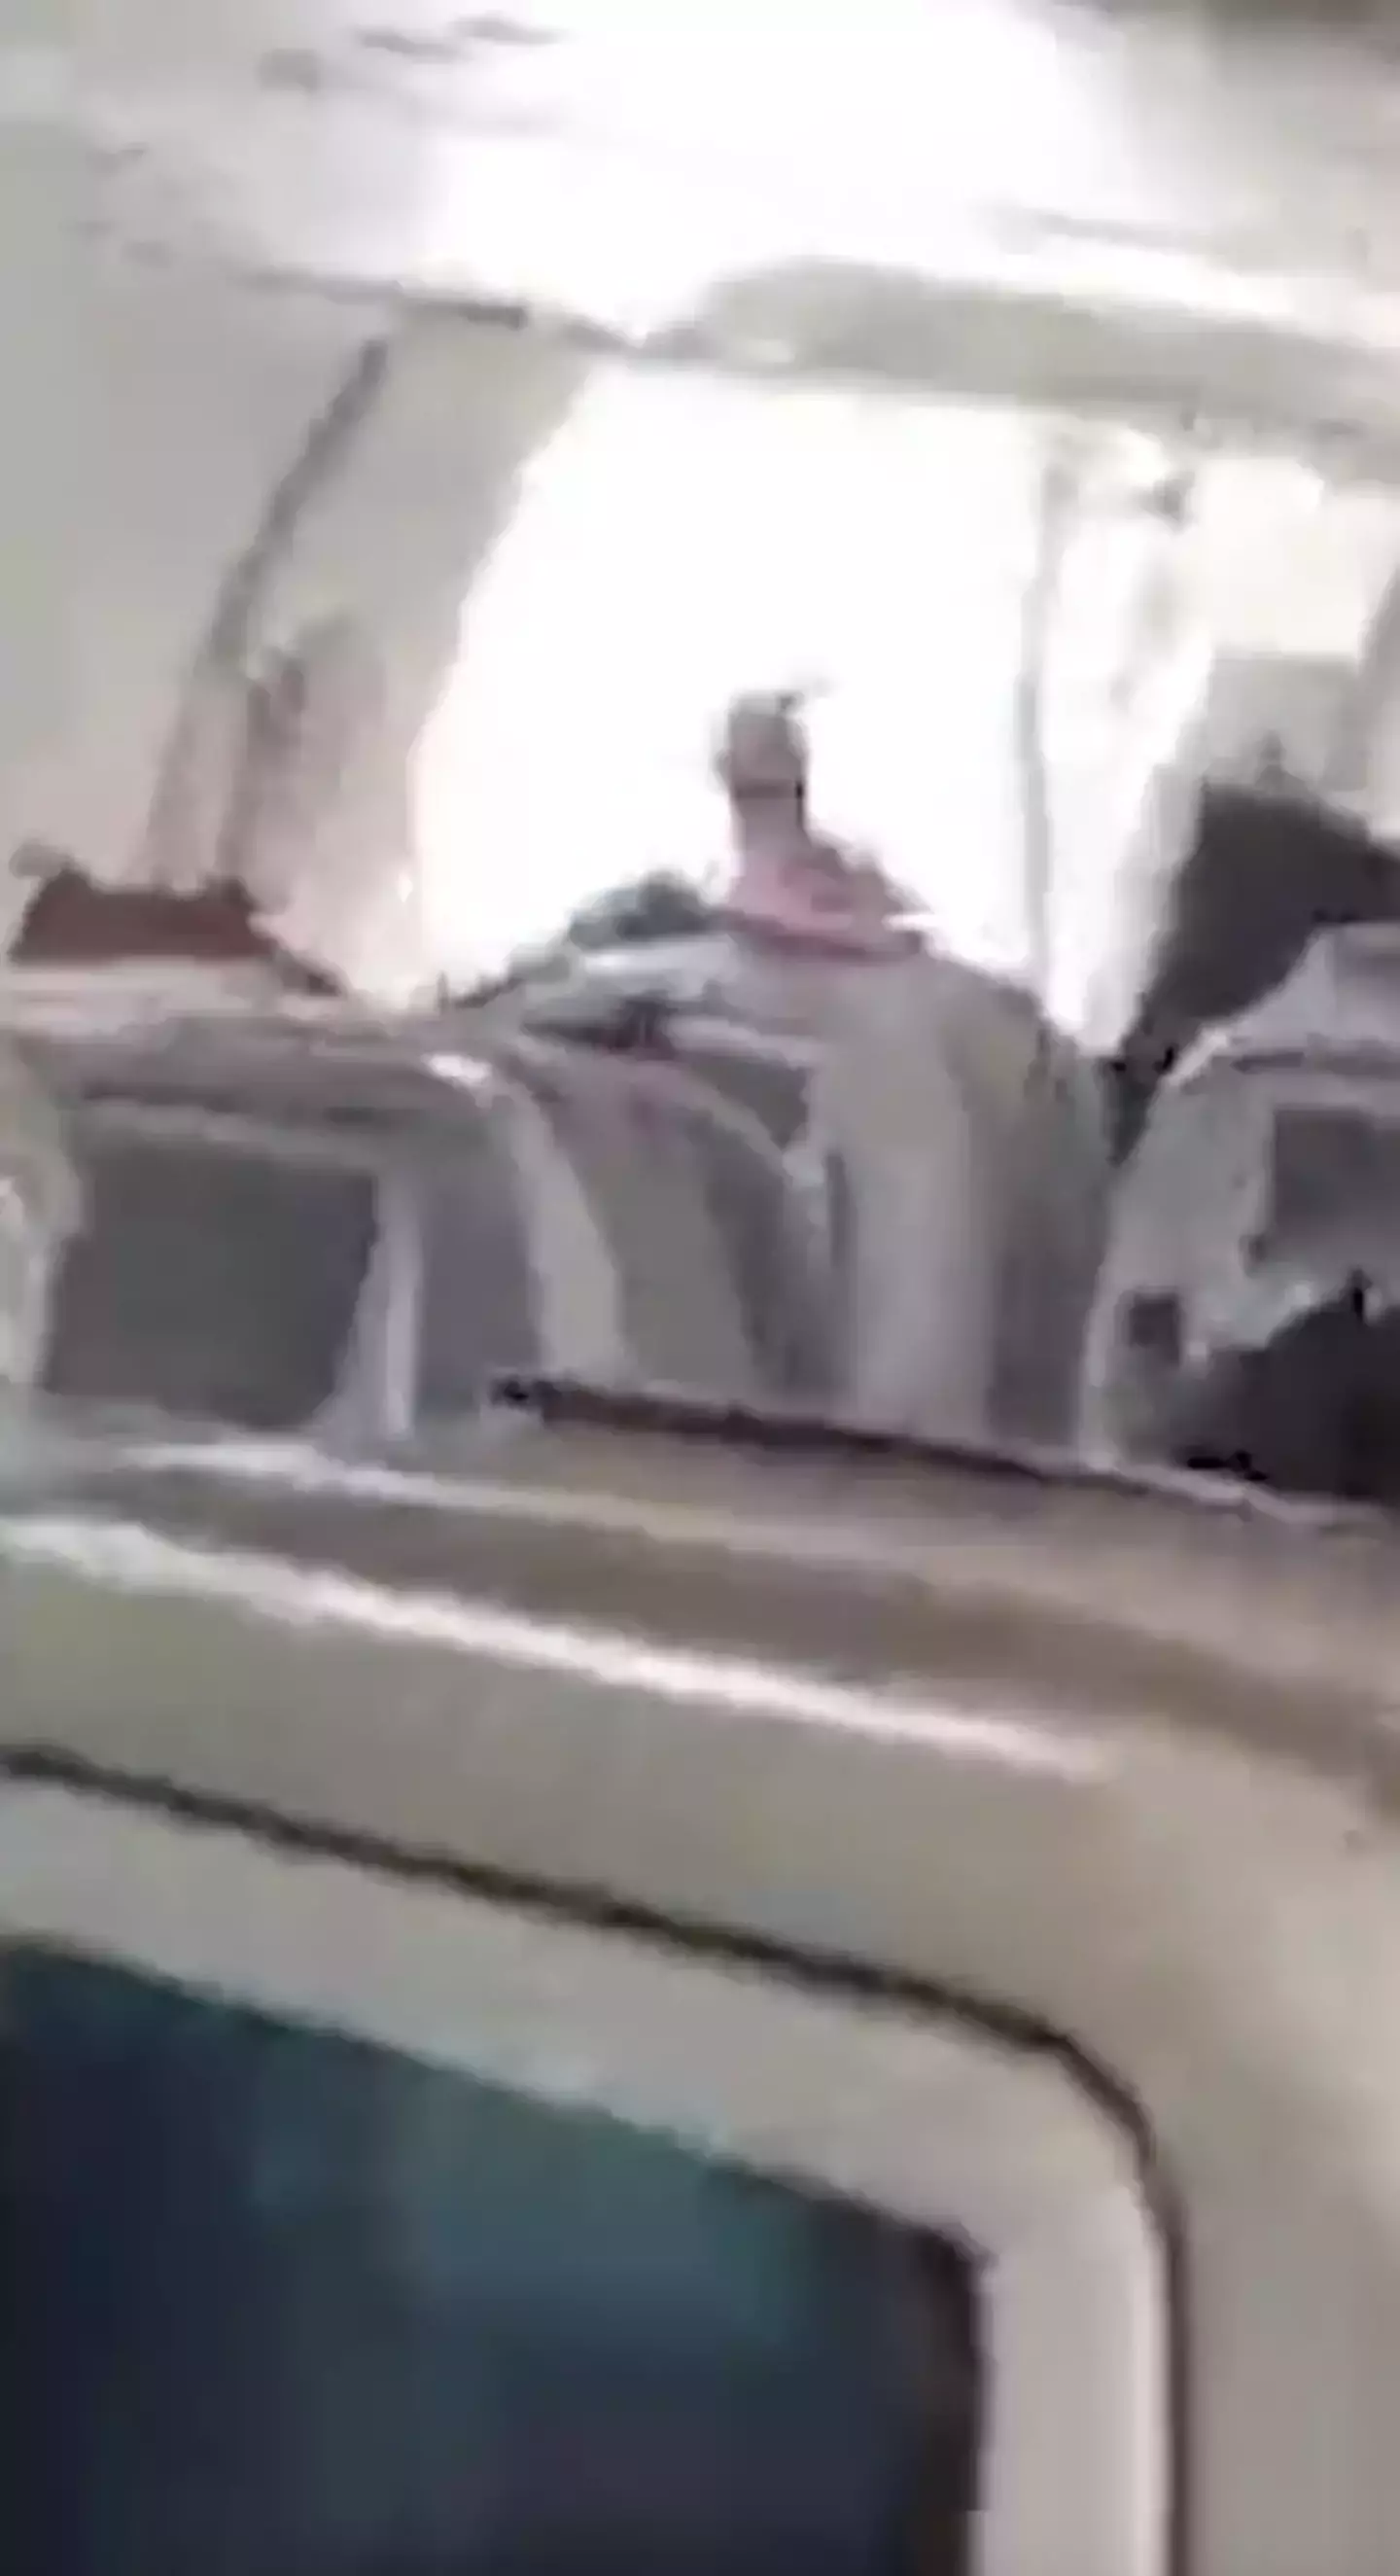 The passenger opened the plane door mid-flight.